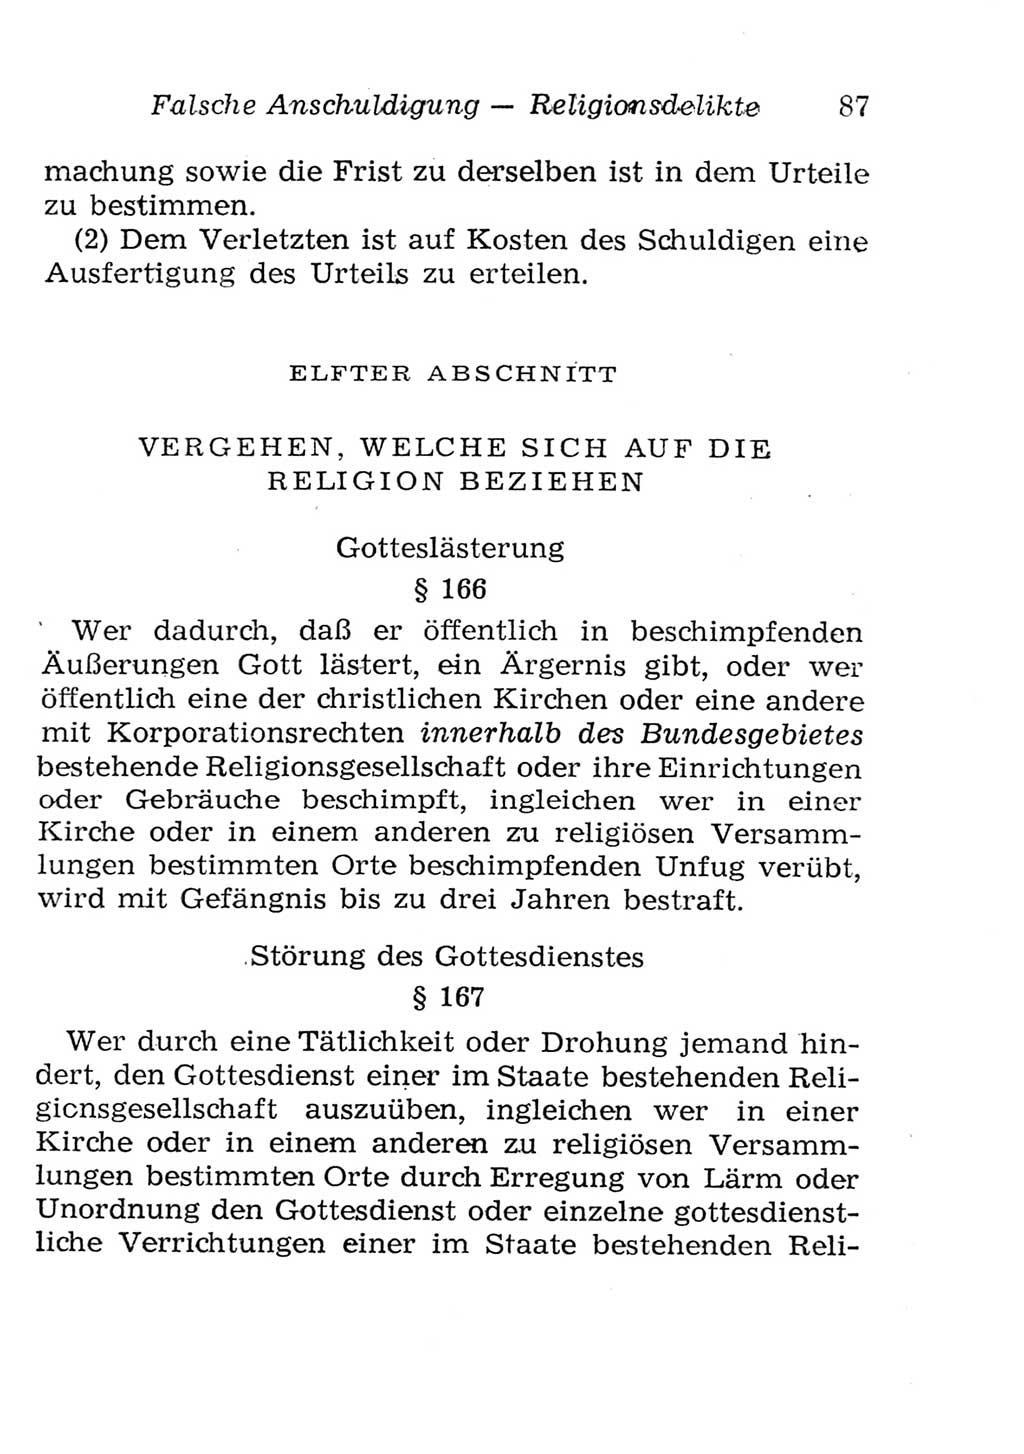 Strafgesetzbuch (StGB) und andere Strafgesetze [Deutsche Demokratische Republik (DDR)] 1957, Seite 87 (StGB Strafges. DDR 1957, S. 87)